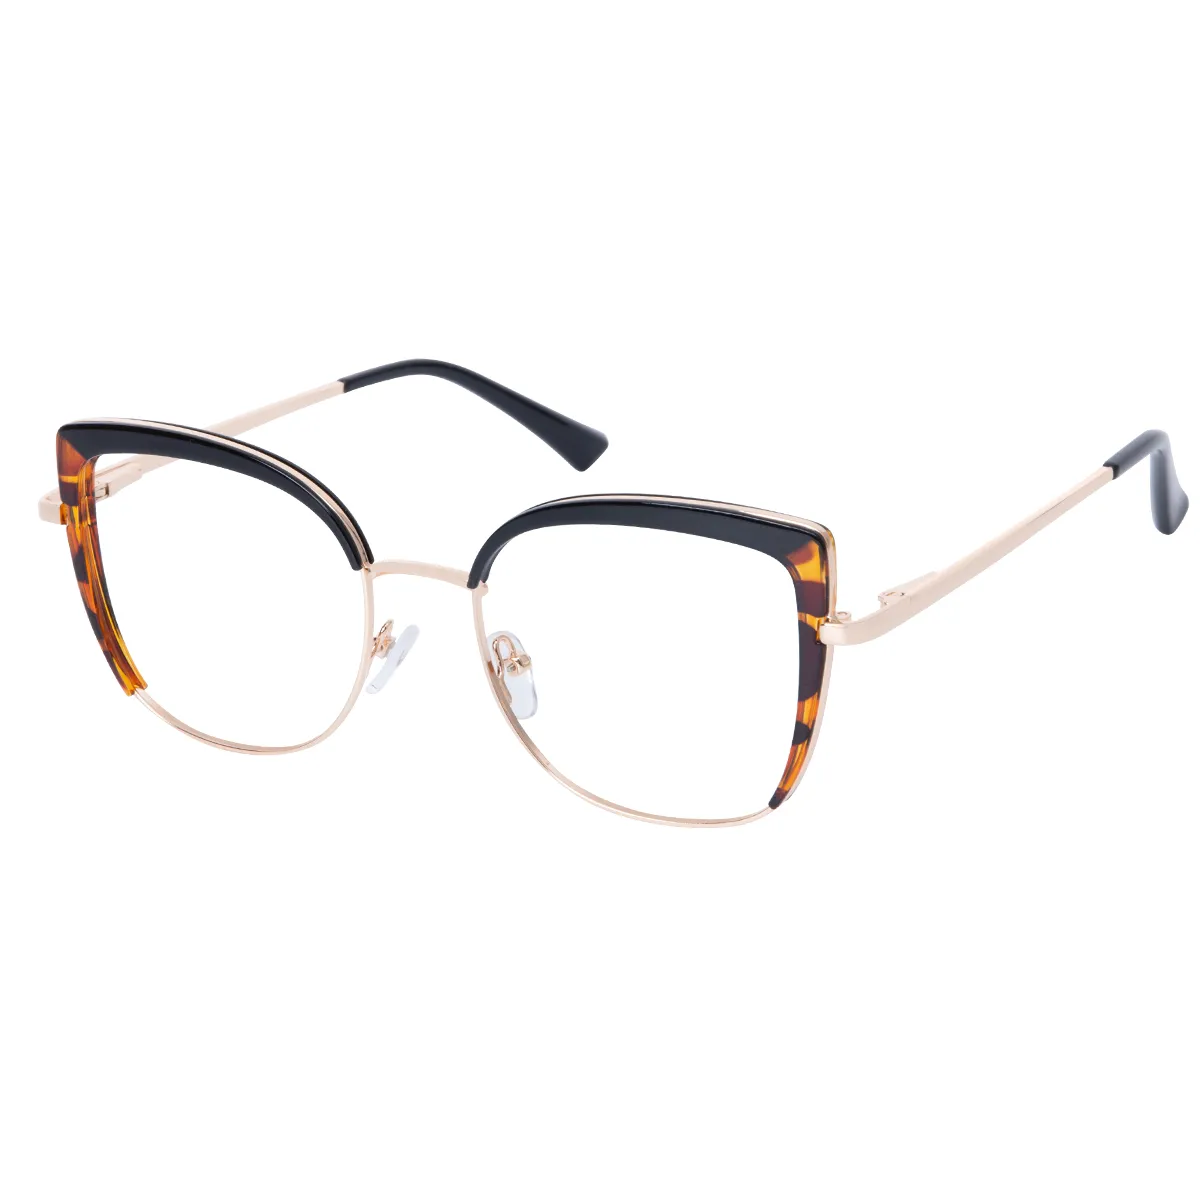 Isolde - Cat-eye Black-Tortoiseshell Glasses for Women